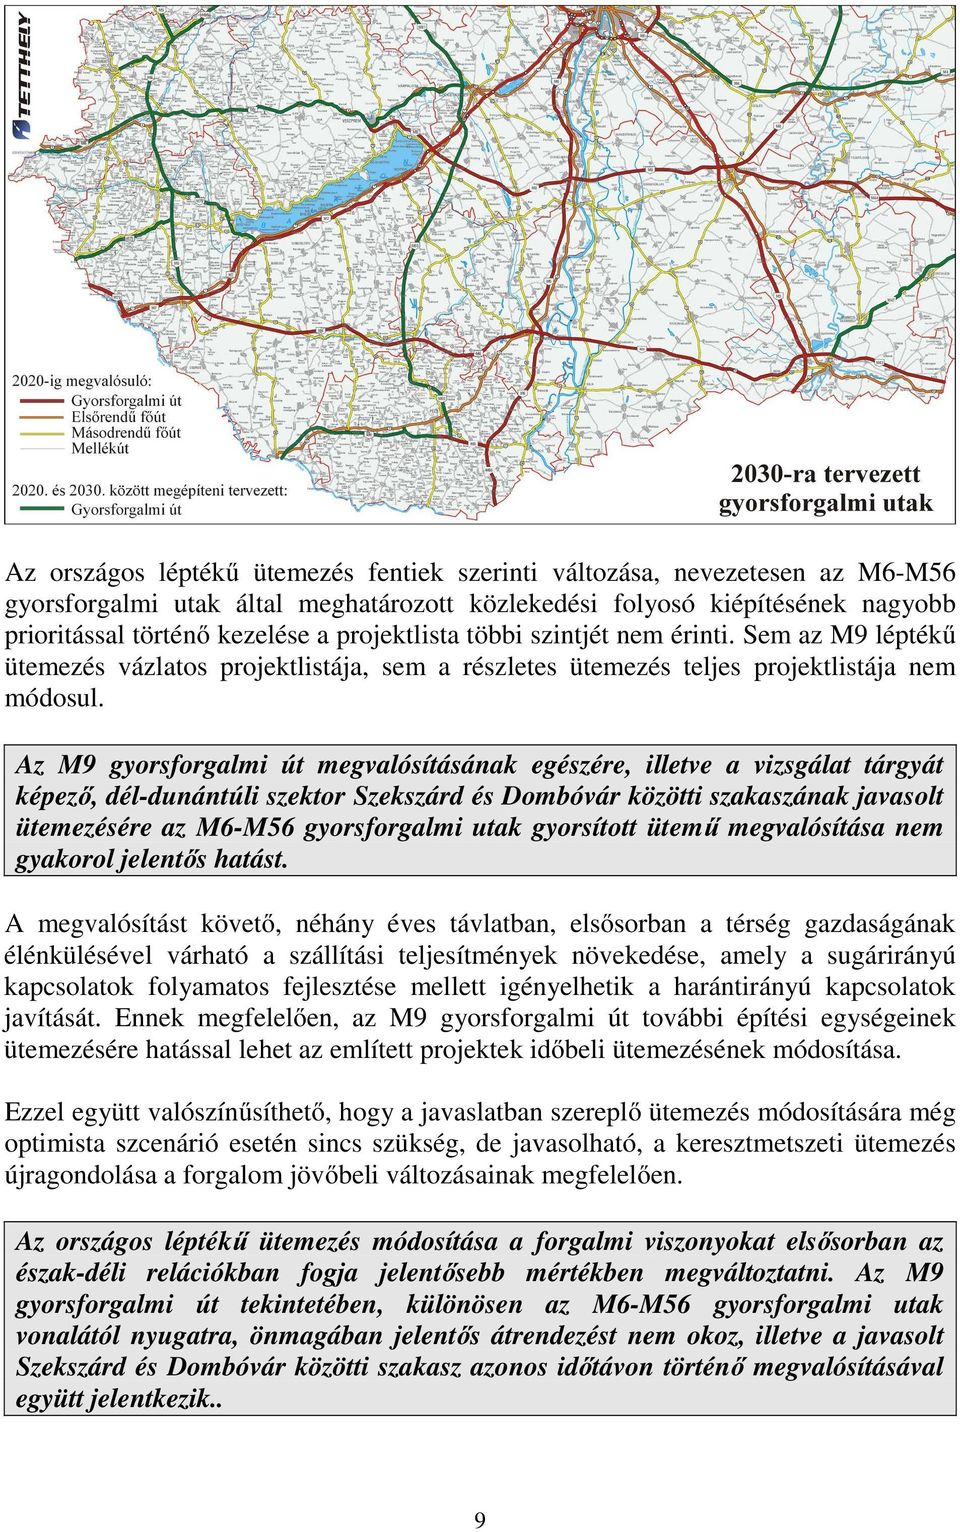 Az M9 gyorsforgalmi út megvalósításának egészére, illetve a vizsgálat tárgyát képező, dél-dunántúli szektor Szekszárd és Dombóvár közötti szakaszának javasolt ütemezésére az M6-M56 gyorsforgalmi utak